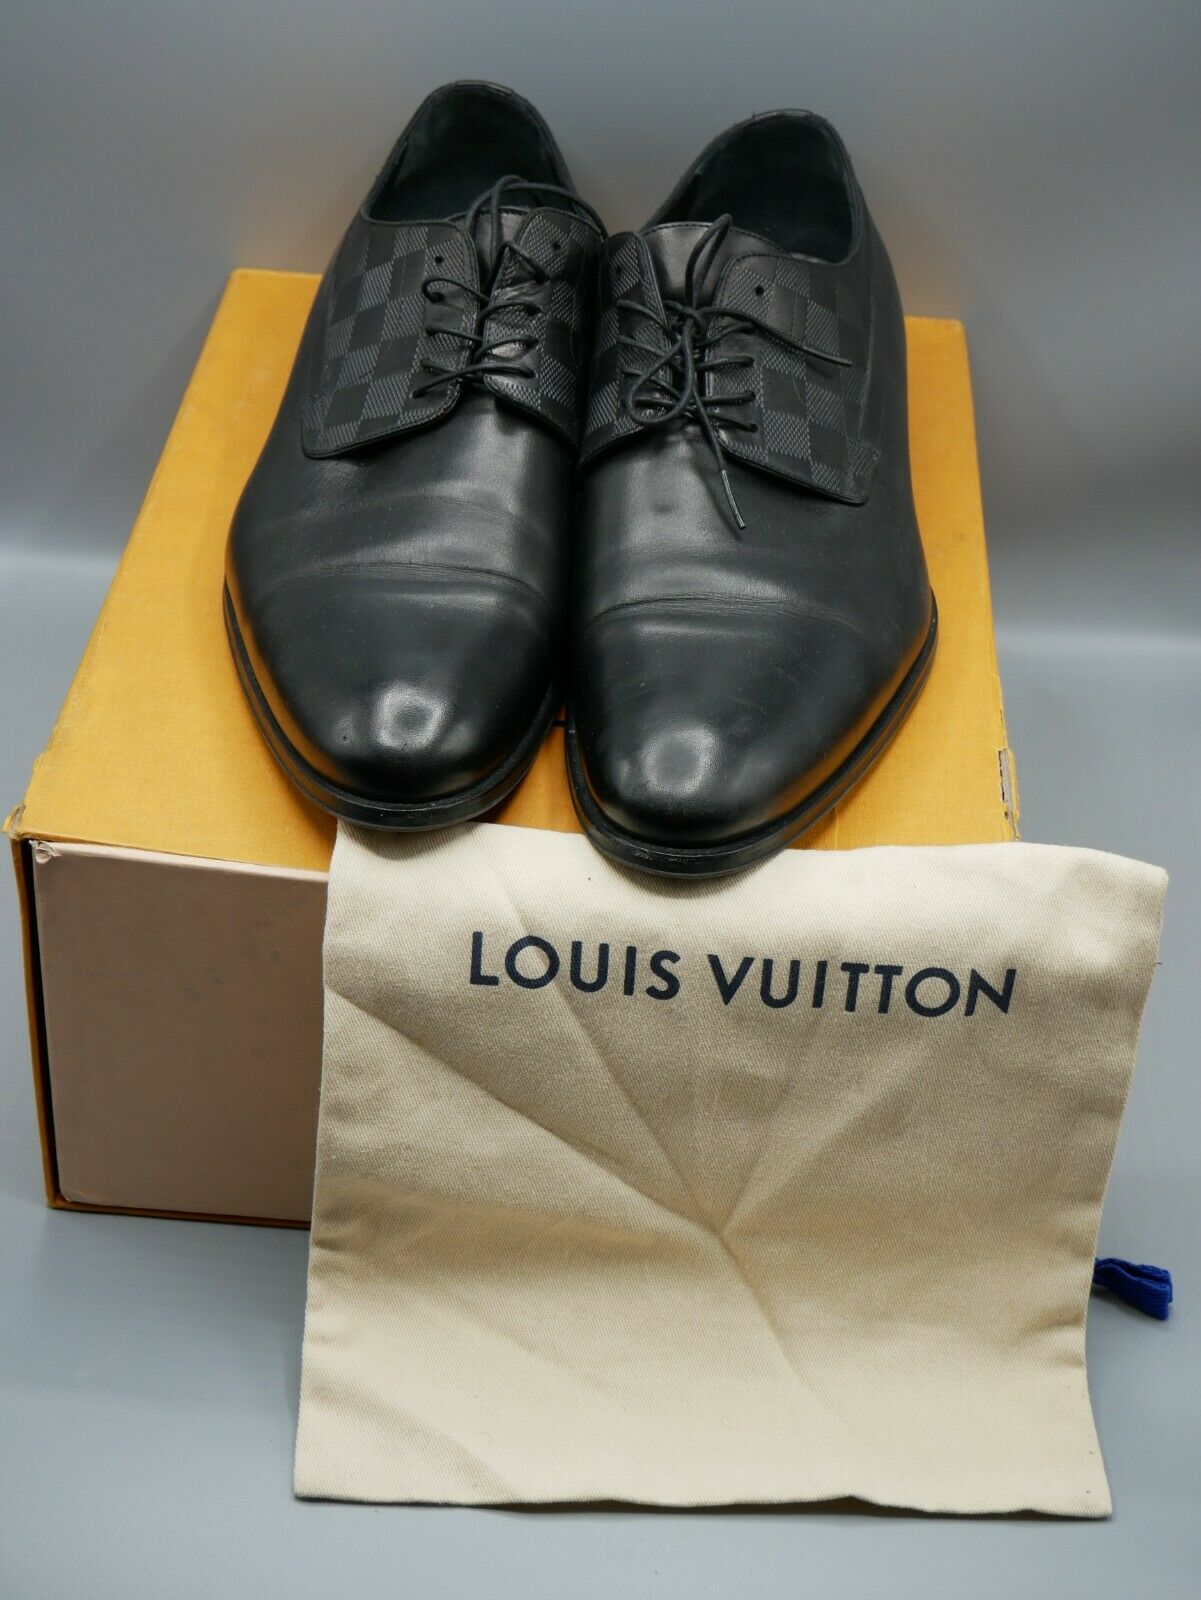 LOUIS VUITTON Size 12 Black Damier Leather Lace Up Dress Shoes at